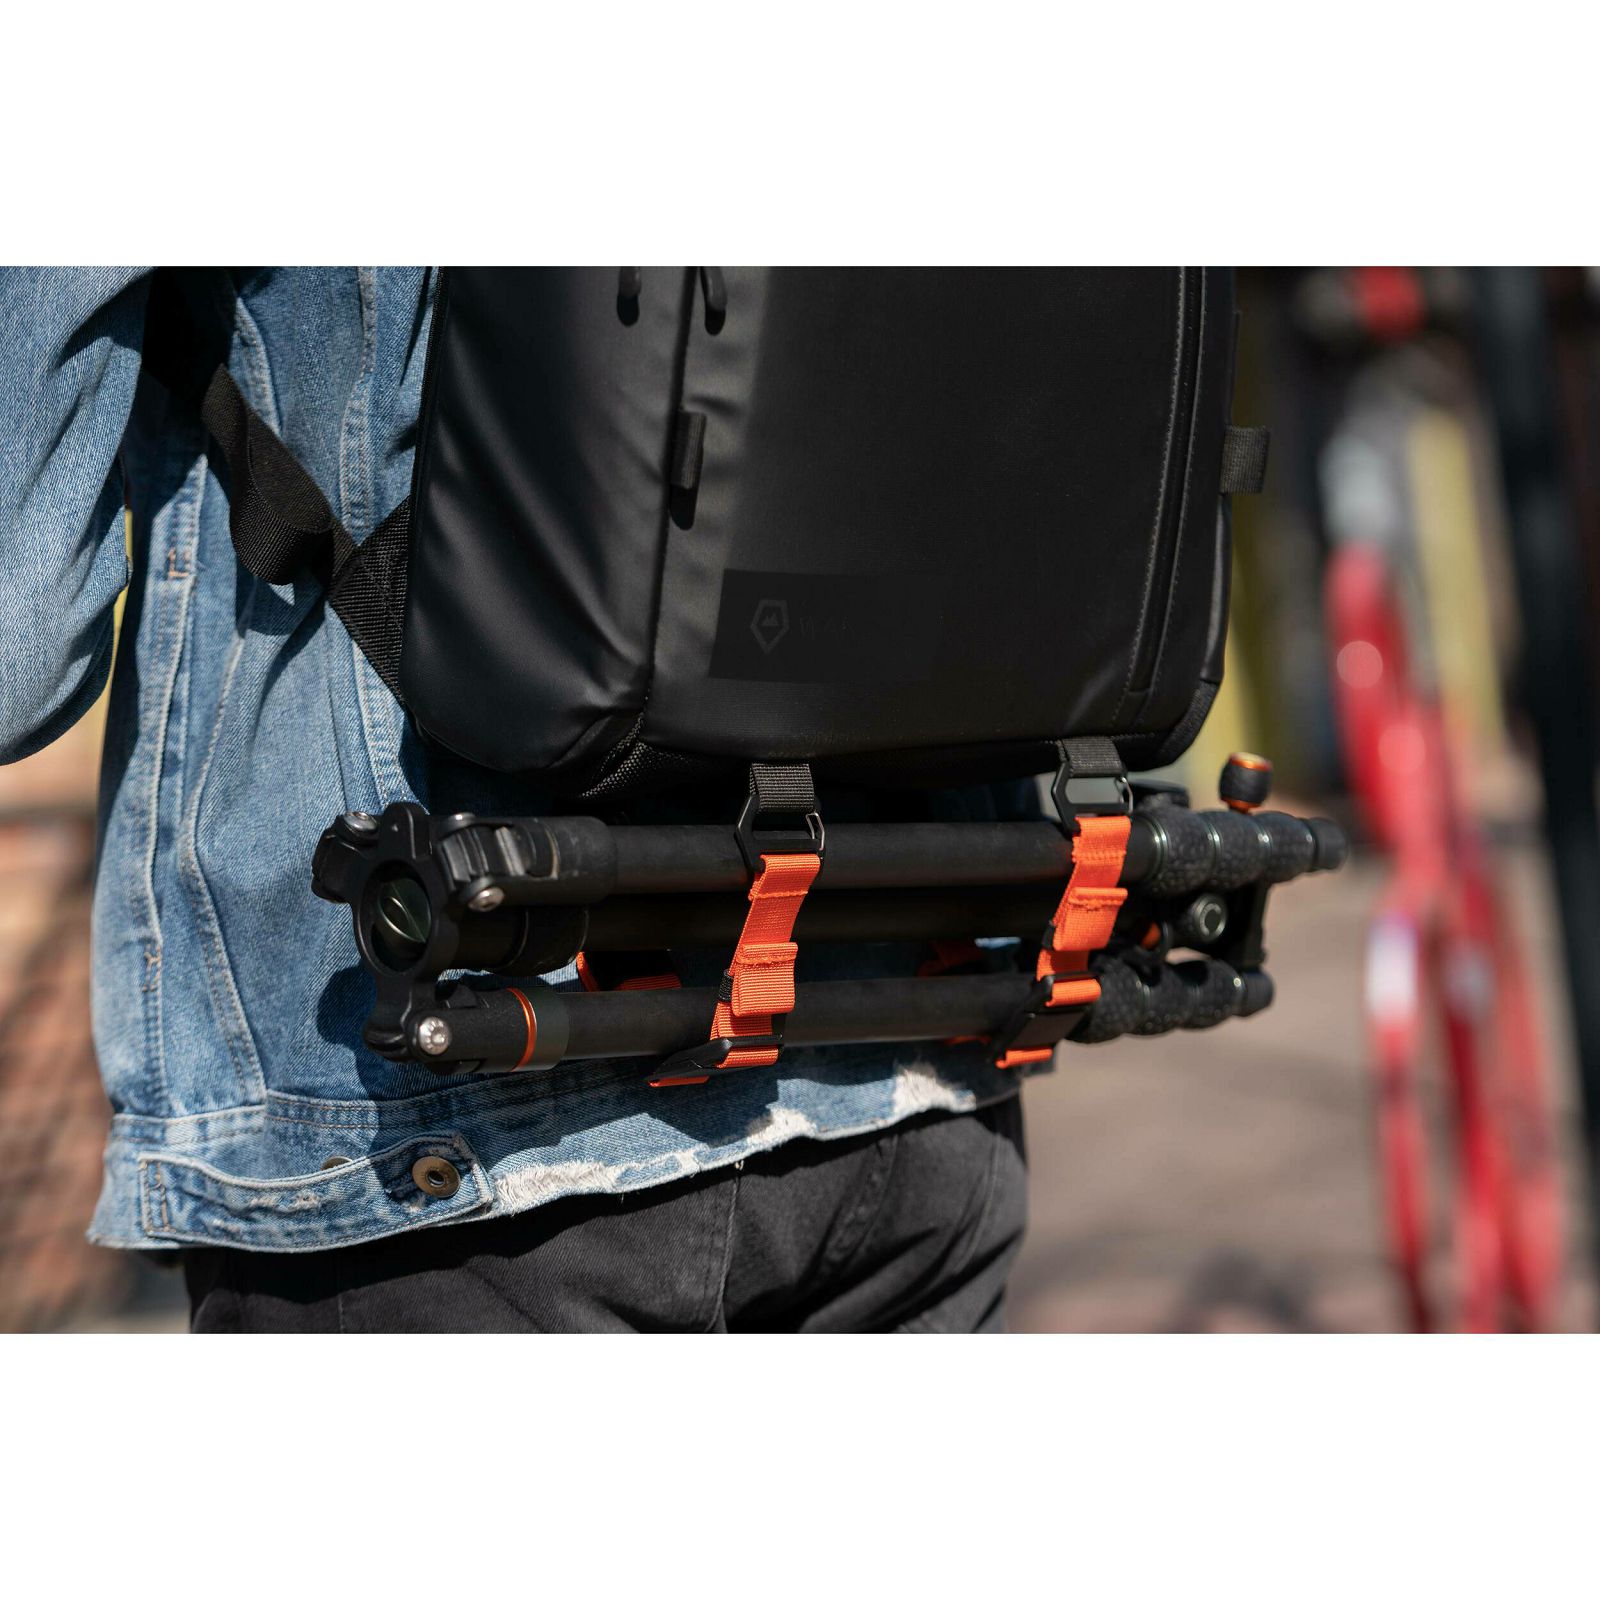 Wandrd Prvke 11L V3 Lite Black Backpack ruksak za foto opremu (PKLT-BK-3)